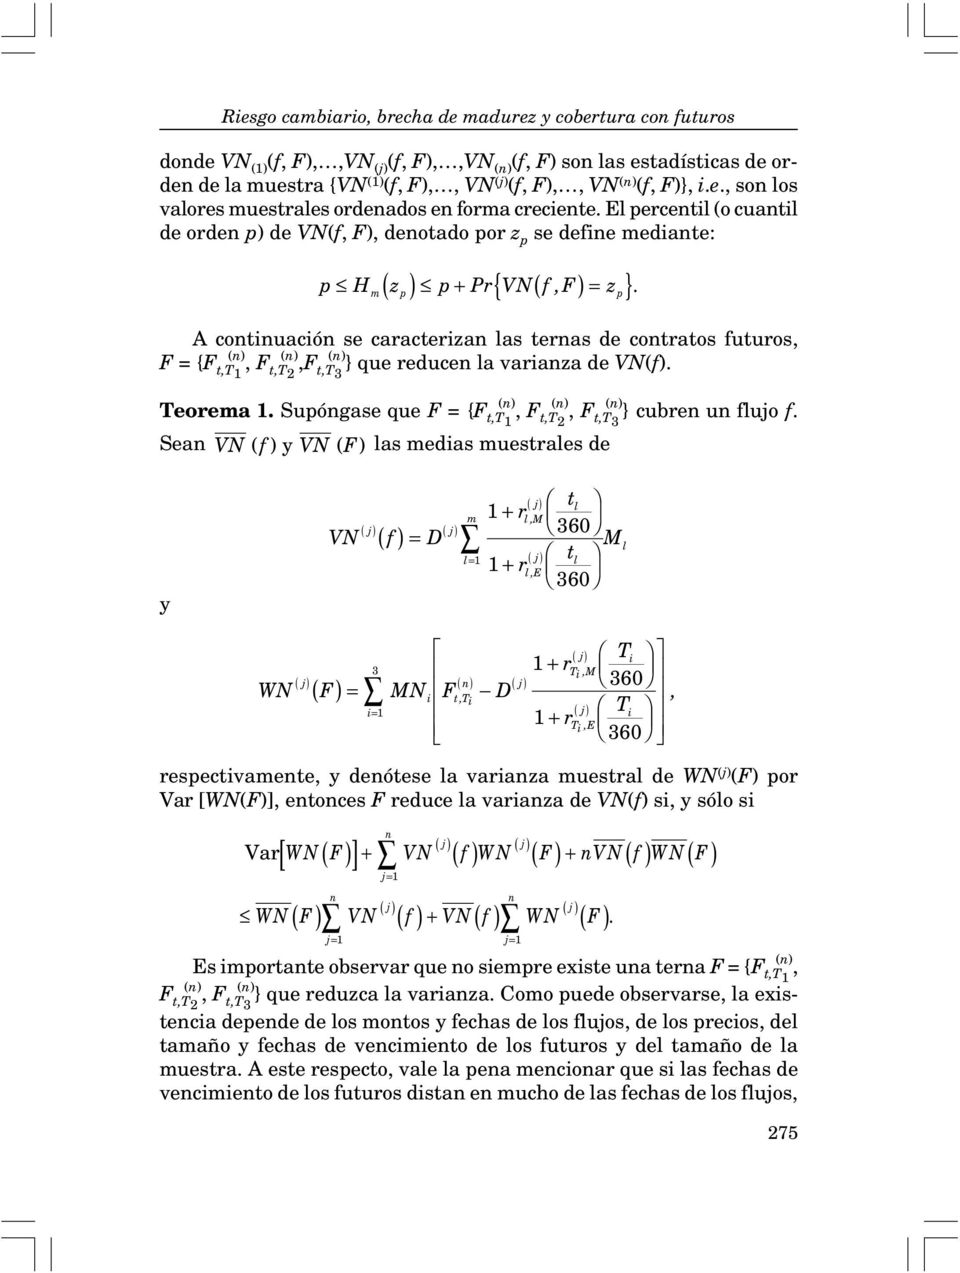 m p p A continuación se caracterizan las ternas de contratos futuros, F = {F (n) t,t1, F (n) t,t2,f (n) t,t3 } que reducen la varianza de VN(f). Teorema 1.